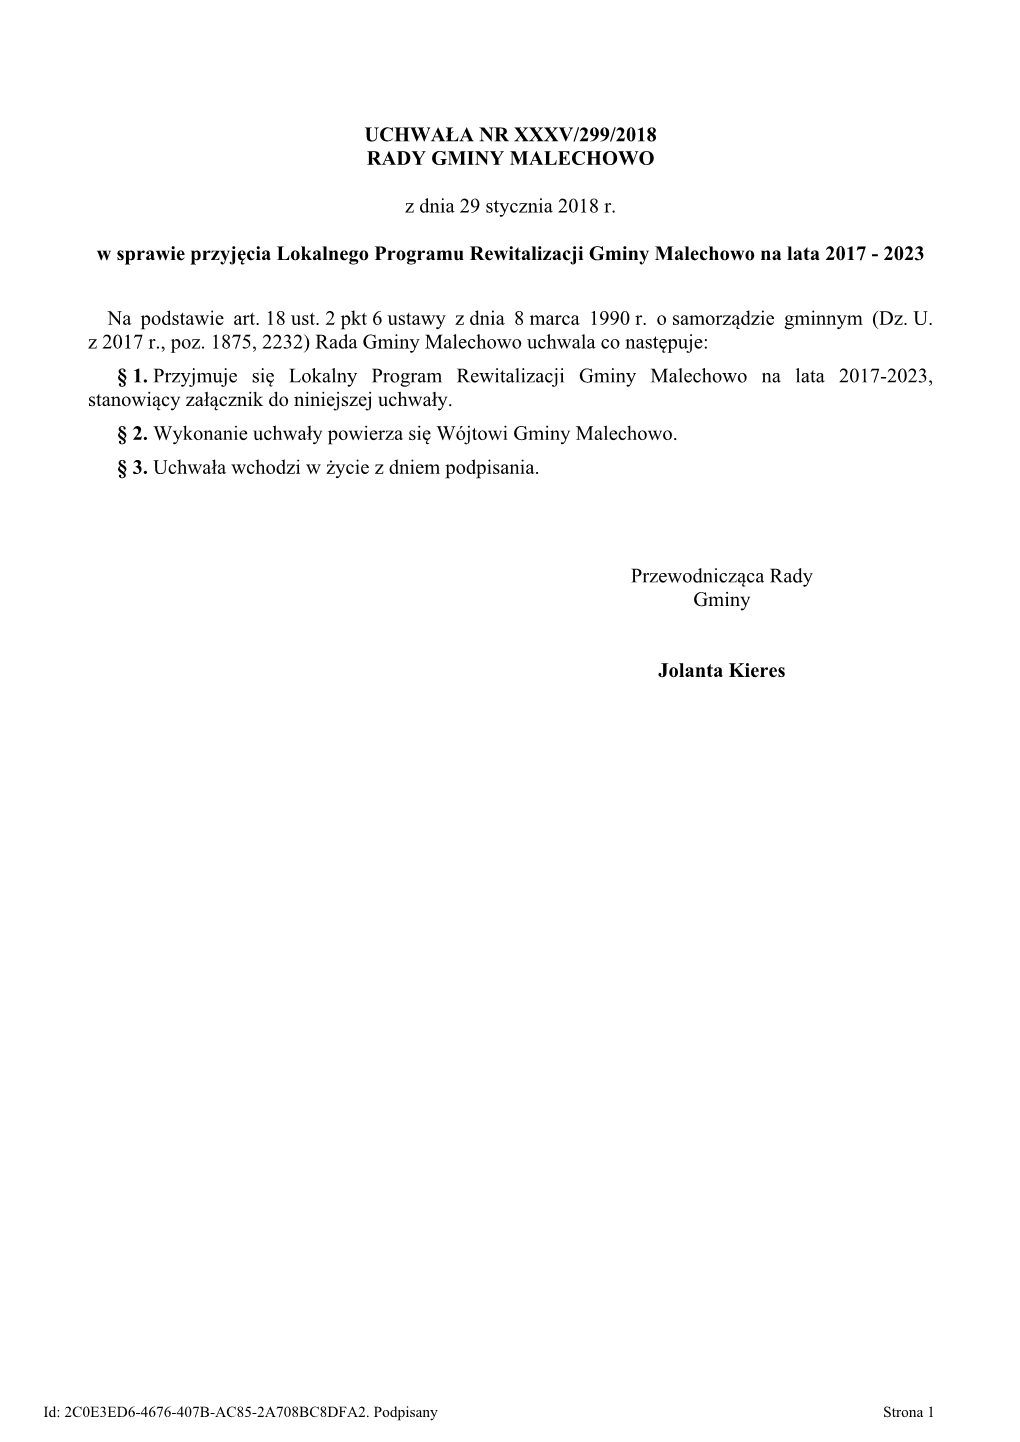 Lokalny Program Rewitalizacji Gminy Malechowo Na Lata 2017-2023, Stanowiący Załącznik Do Niniejszej Uchwały